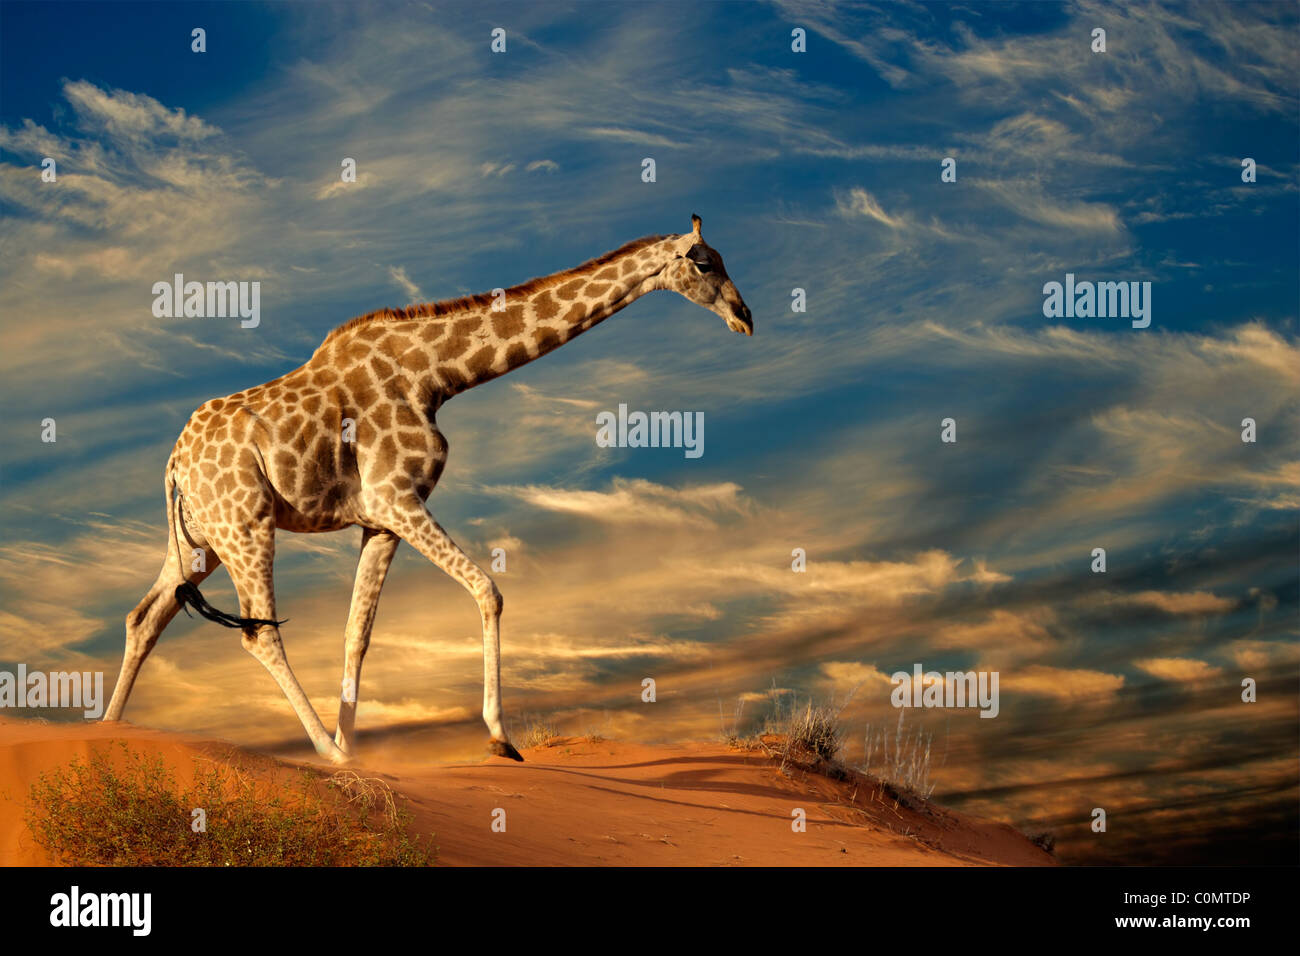 Girafe (Giraffa camelopardalis) marcher sur une dune de sable avec des nuages, Afrique du Sud Banque D'Images